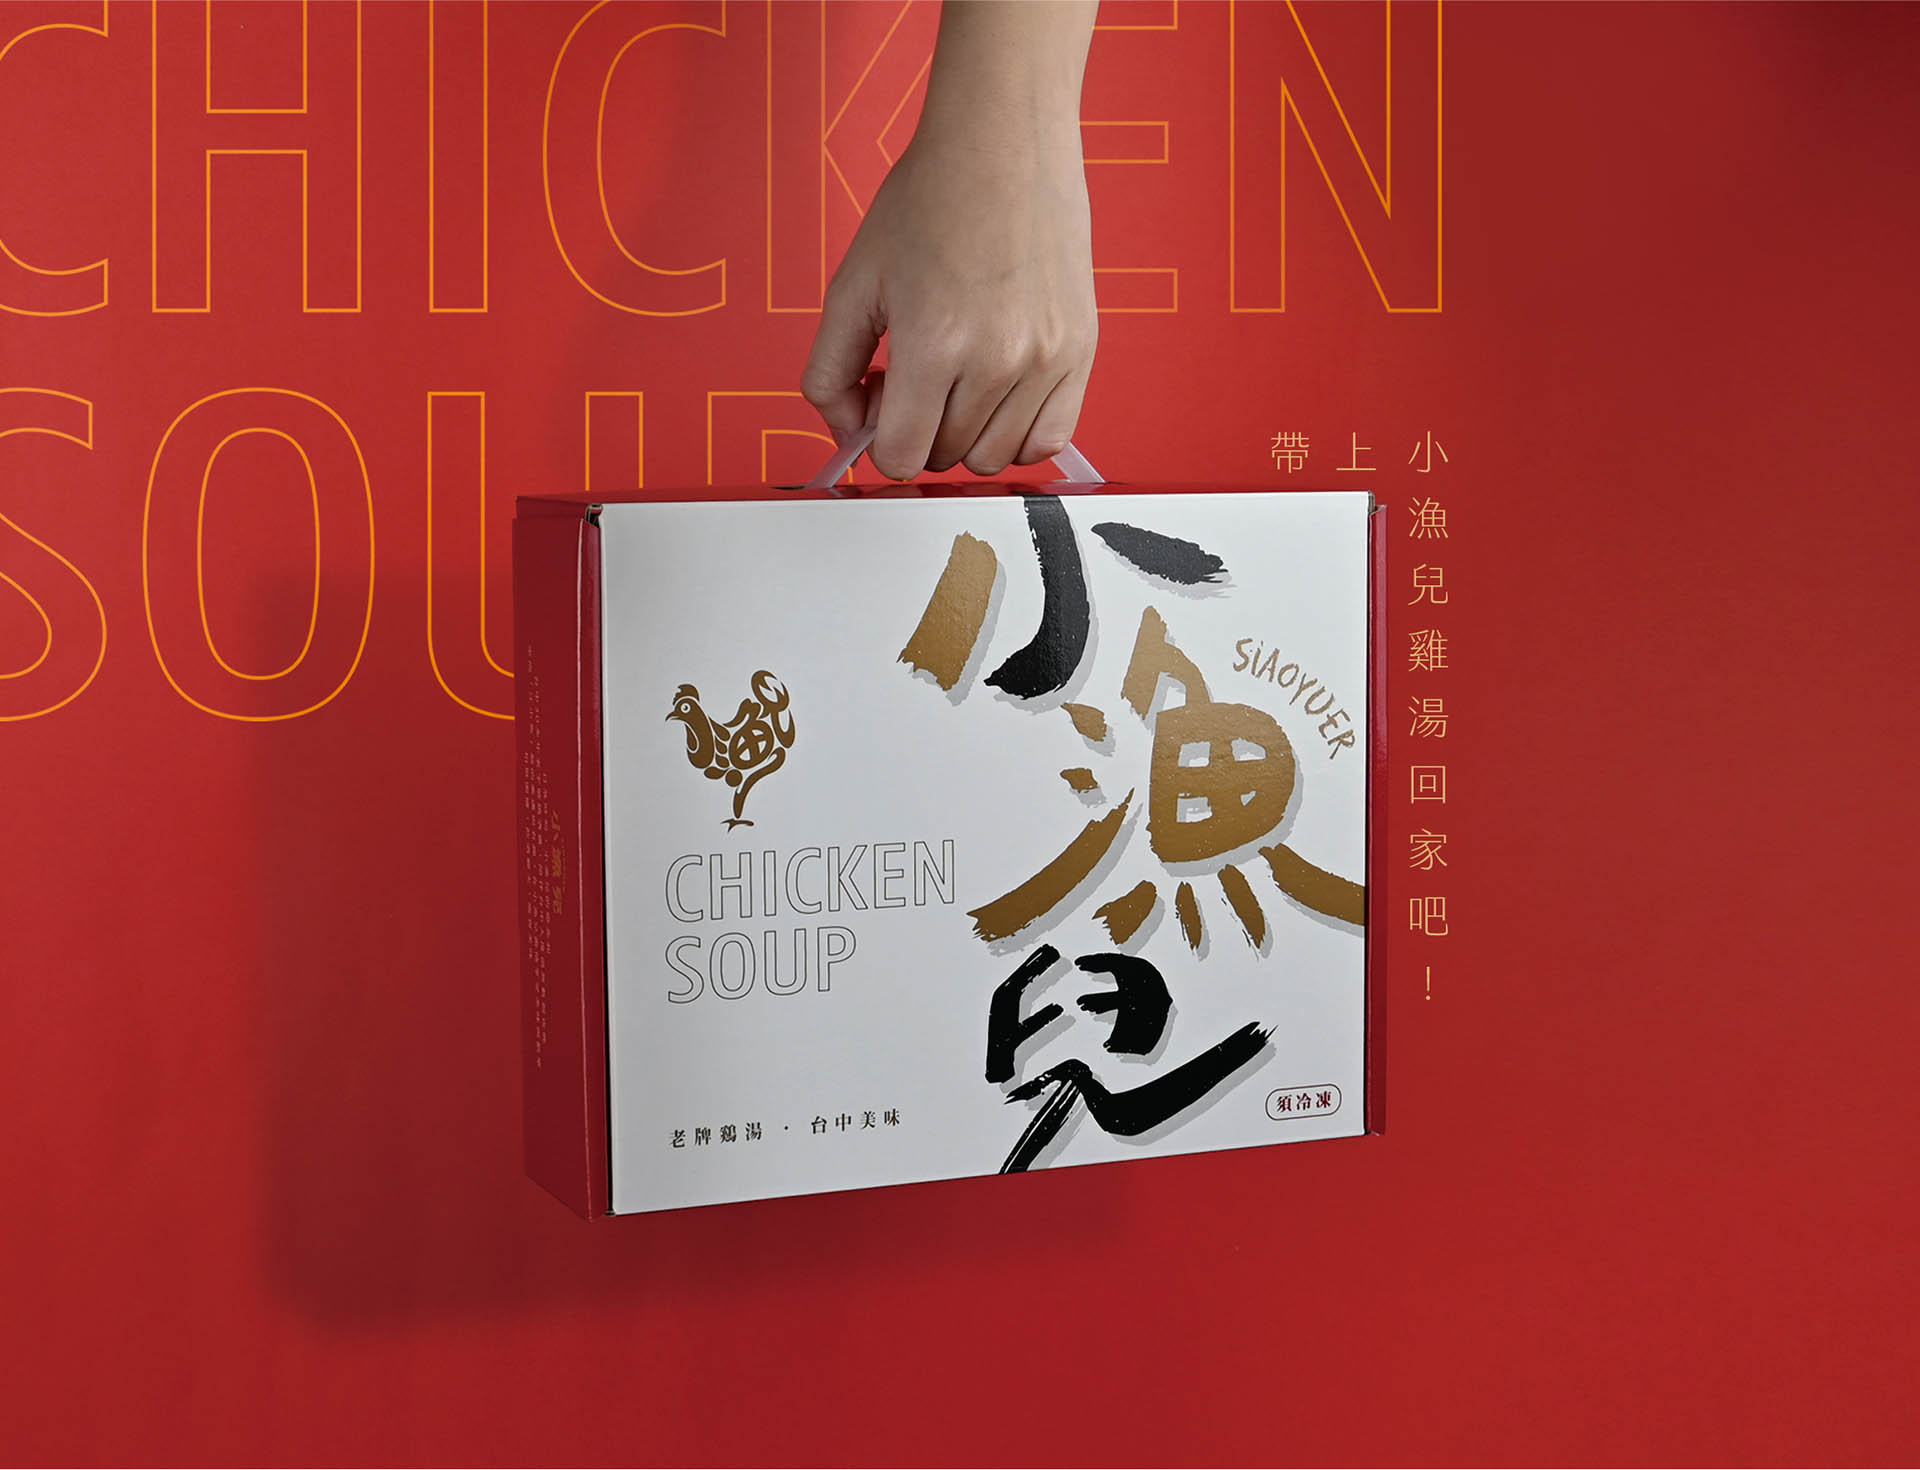 小漁兒 雞湯  冷凍食品 包裝設計 台中商標設計、型錄設計、包裝設計、網頁設計、企業及品牌形象視覺設計